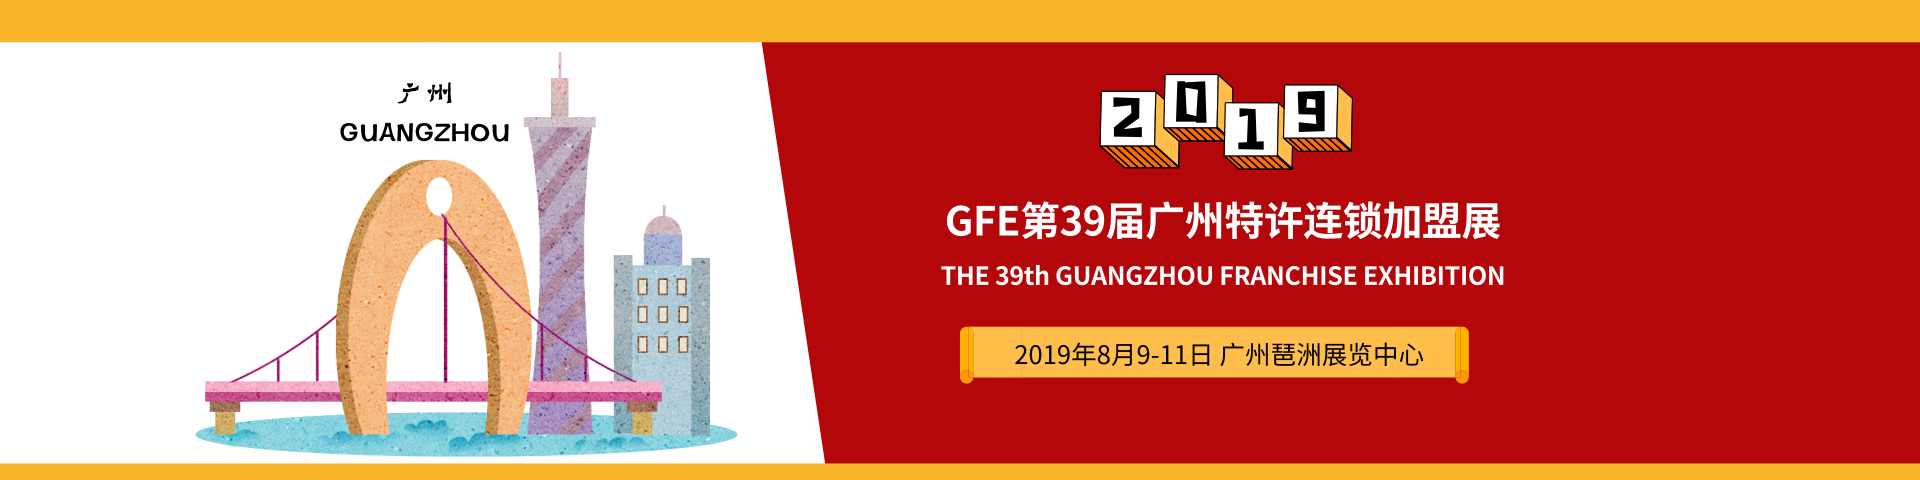 2019GFE第39届广州特许连锁加盟展览会